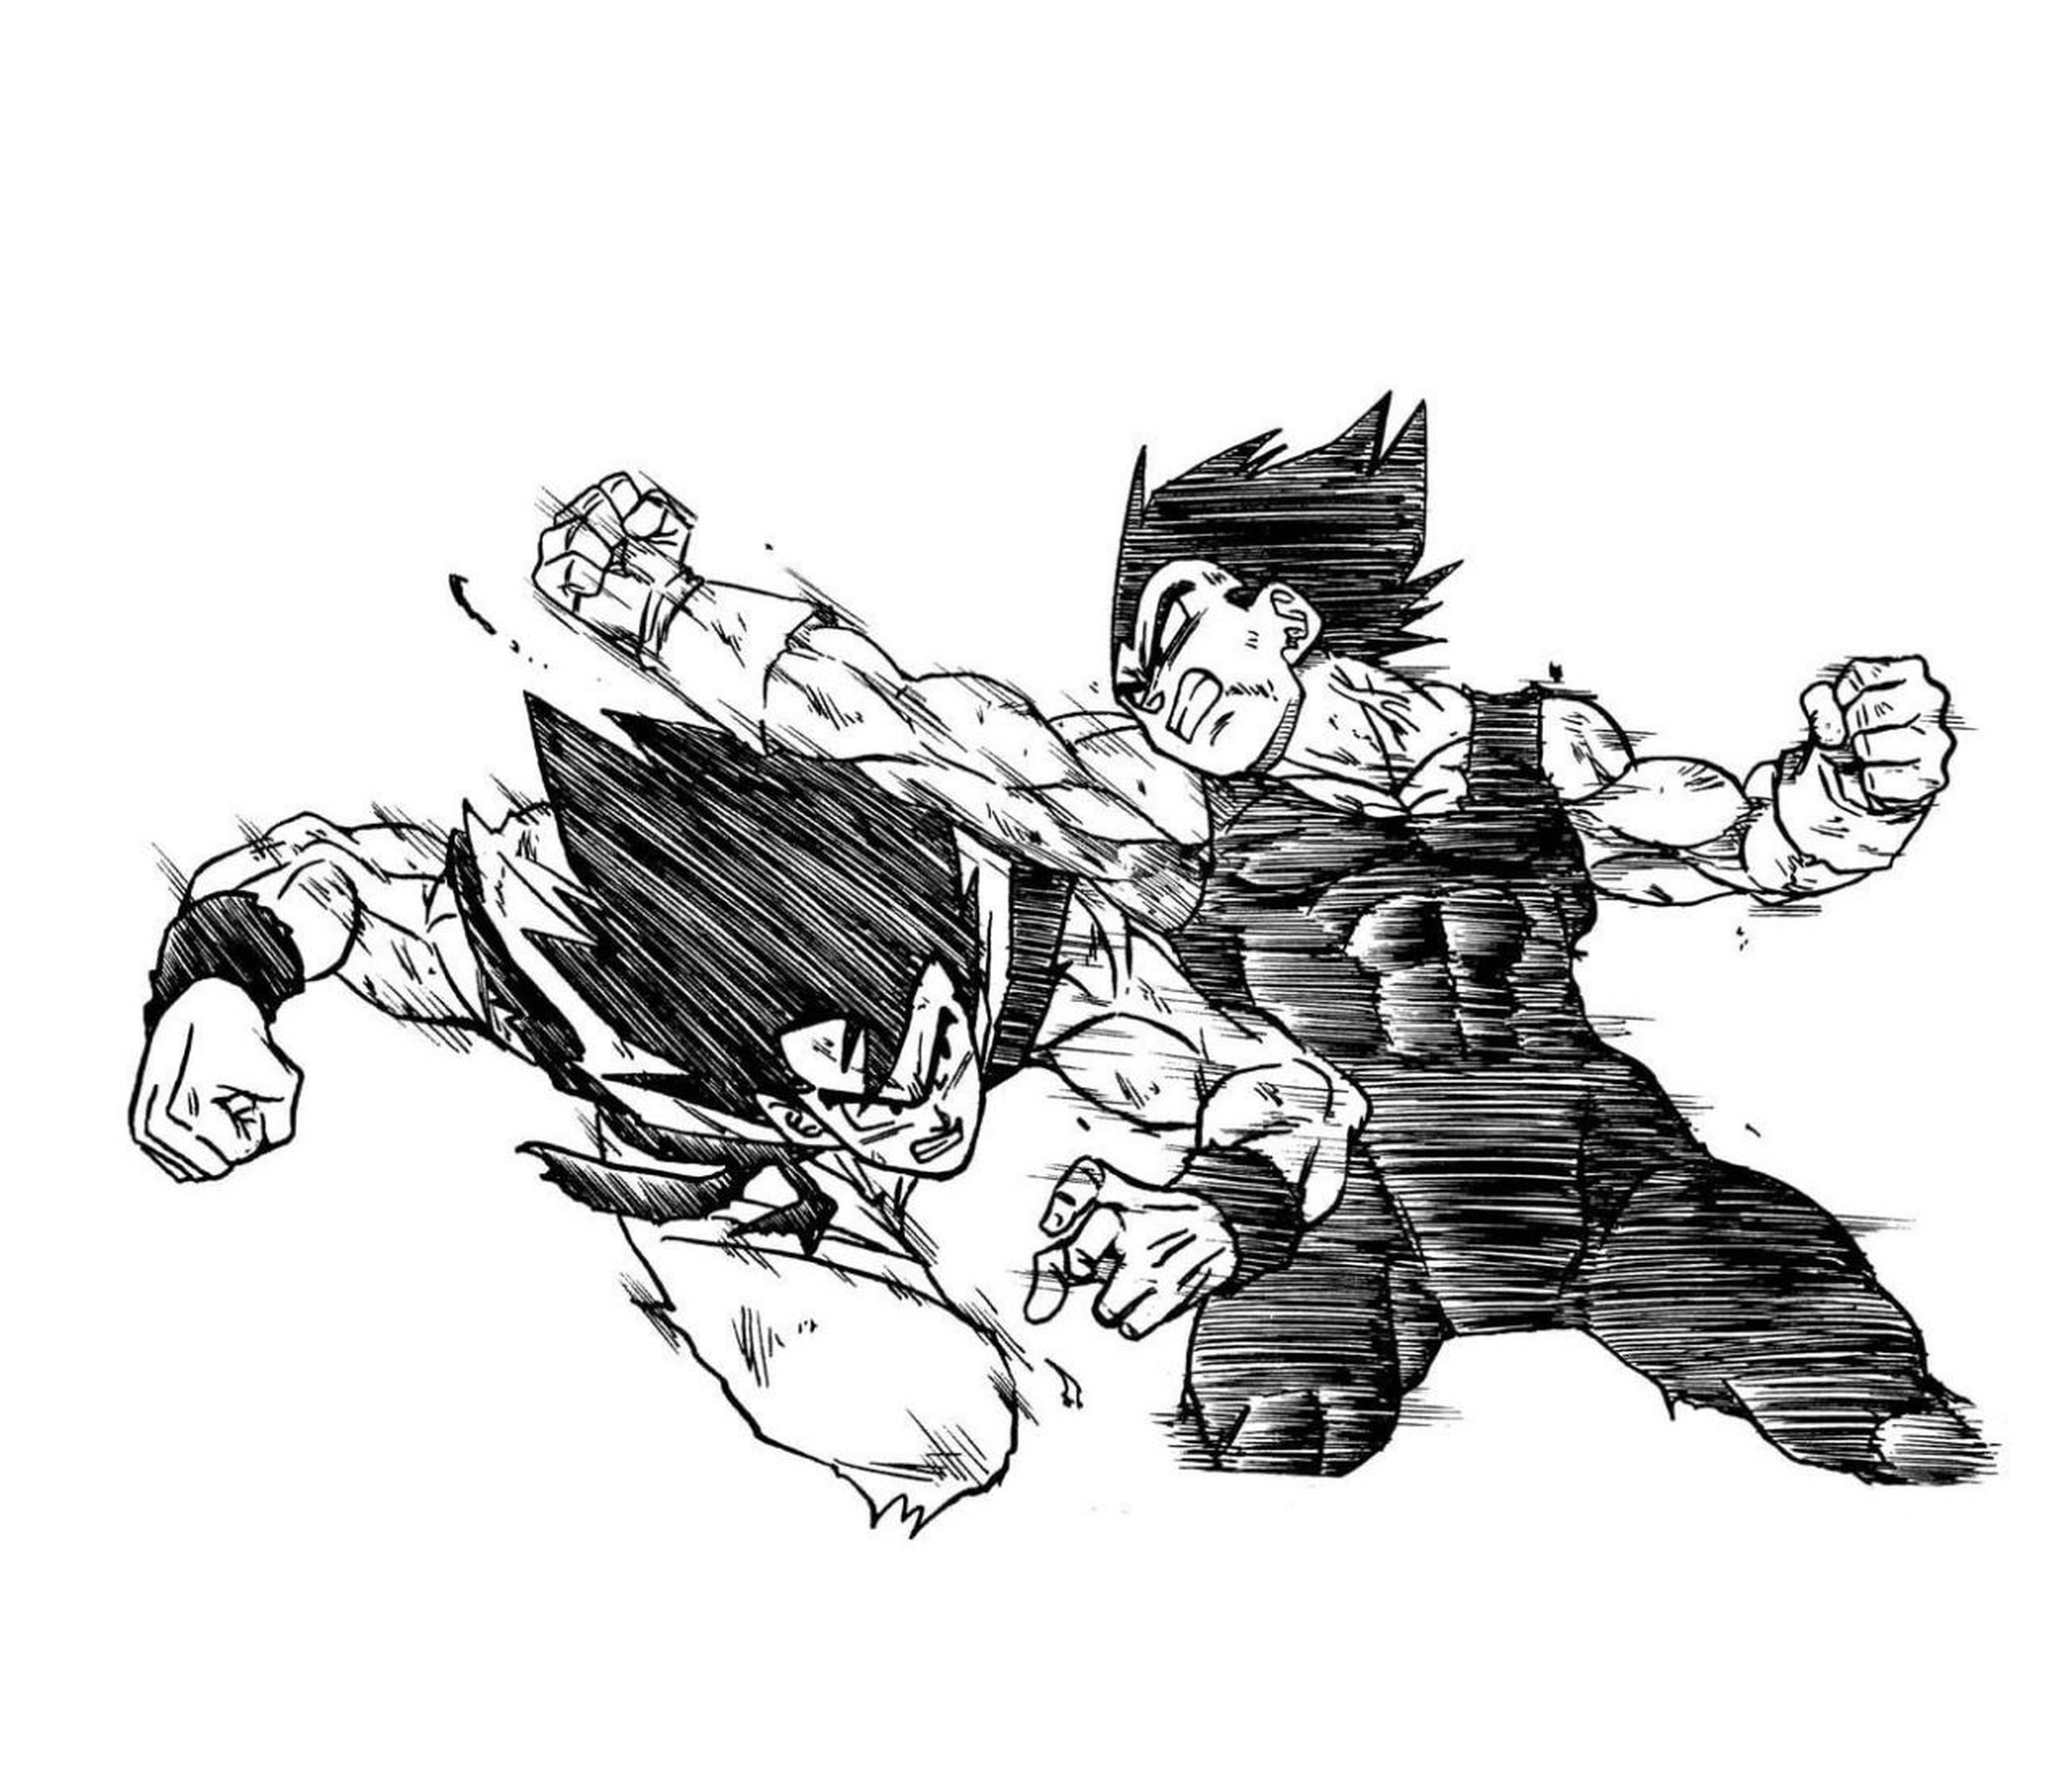 Toyotaro demuestra su calidad en Dragon Ball Super dibujando nuevas ilustraciones de Goku y Vegeta en pleno combate 